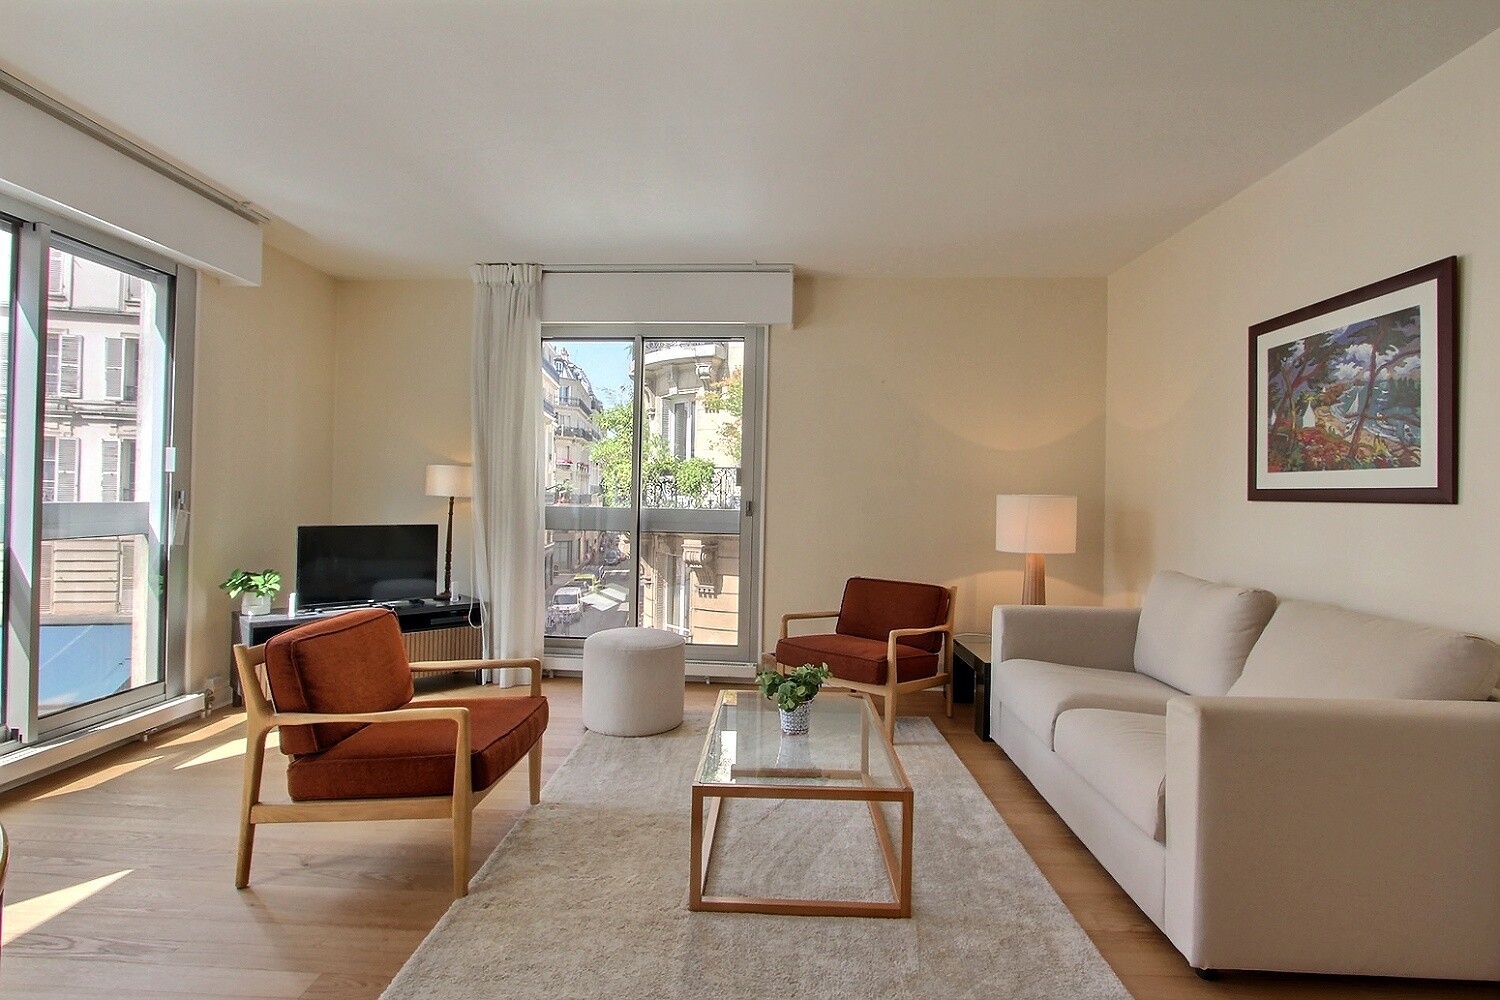 2 bedrooms apartment rental in Paris, Rue Notre Dame des Champs